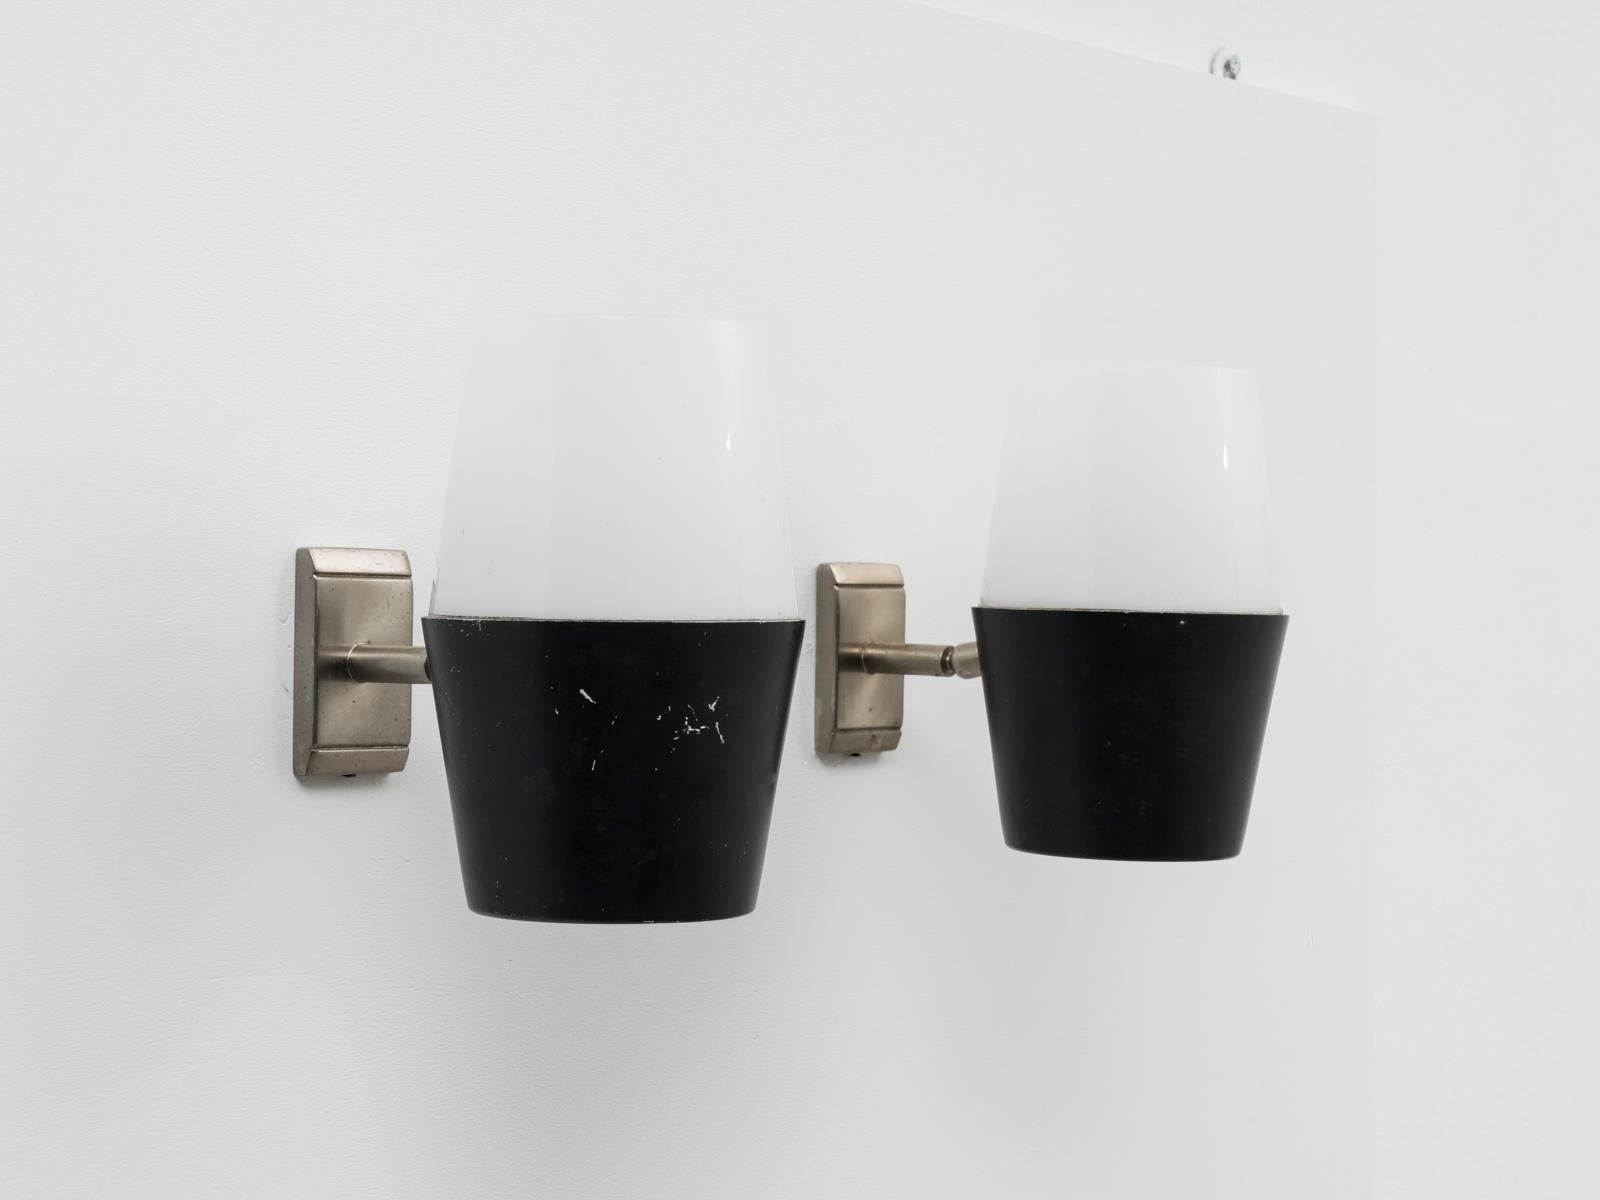 Cette paire d'appliques articulées noires et blanches a été conçue et fabriquée par Stilux Milano au début des années 1960.
Depuis le milieu des années 1950, Stilux Milano est l'un des principaux fabricants italiens de luminaires, avec Stilnovo,